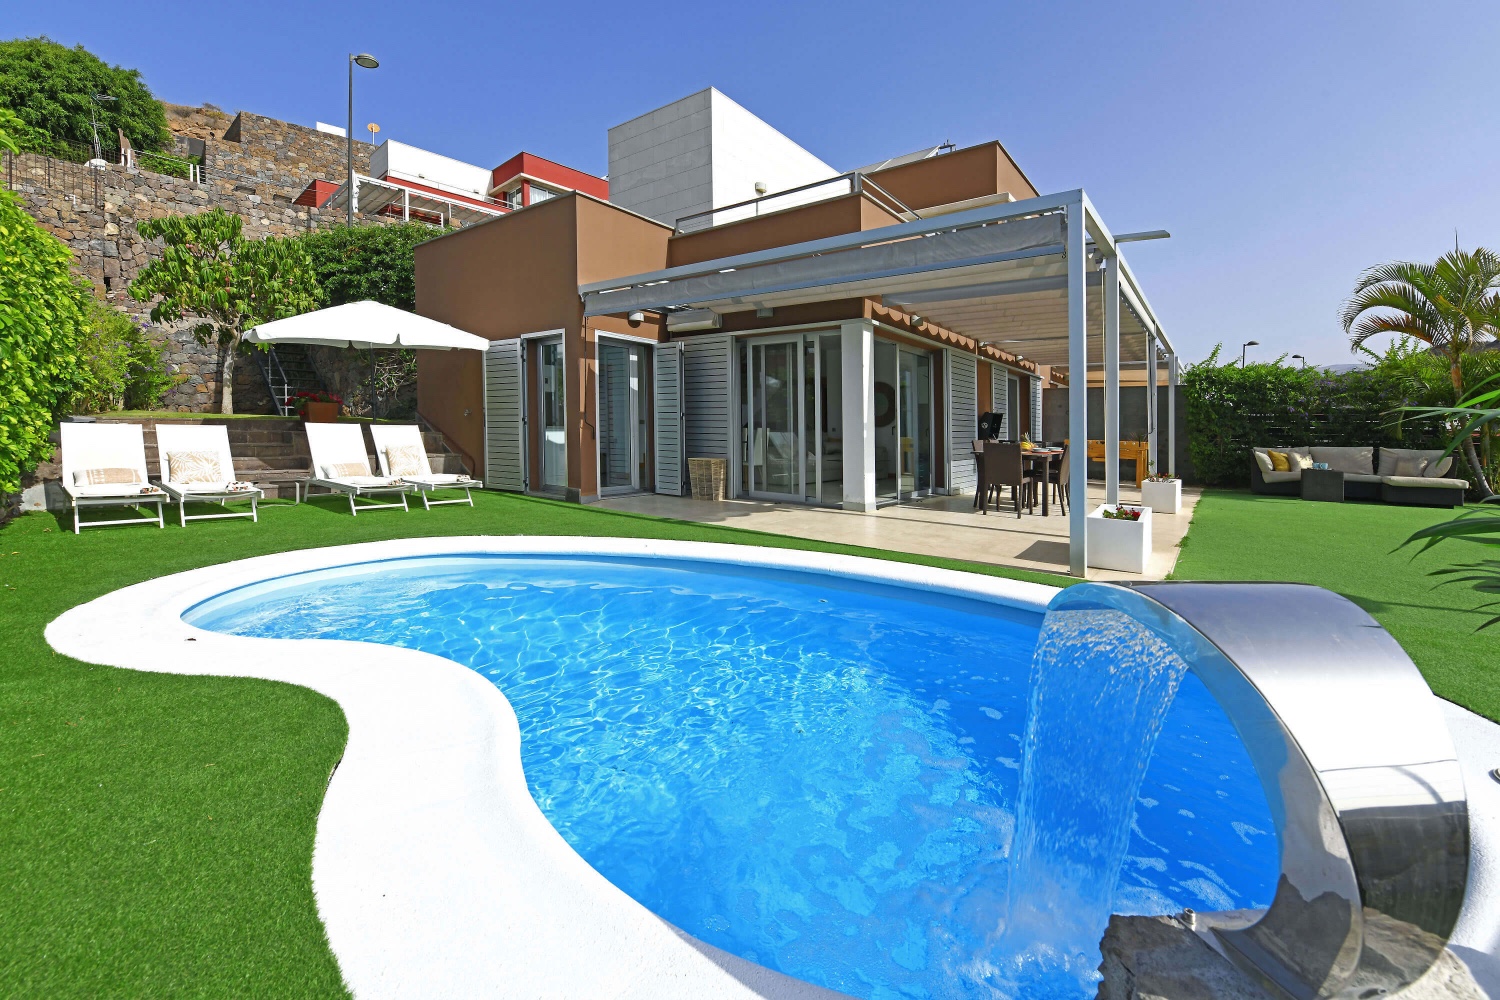 Moderní dům s krásným venkovním areálem s vlastním vyhřívaným bazénem a krásným výhledem na severní golfové hřiště